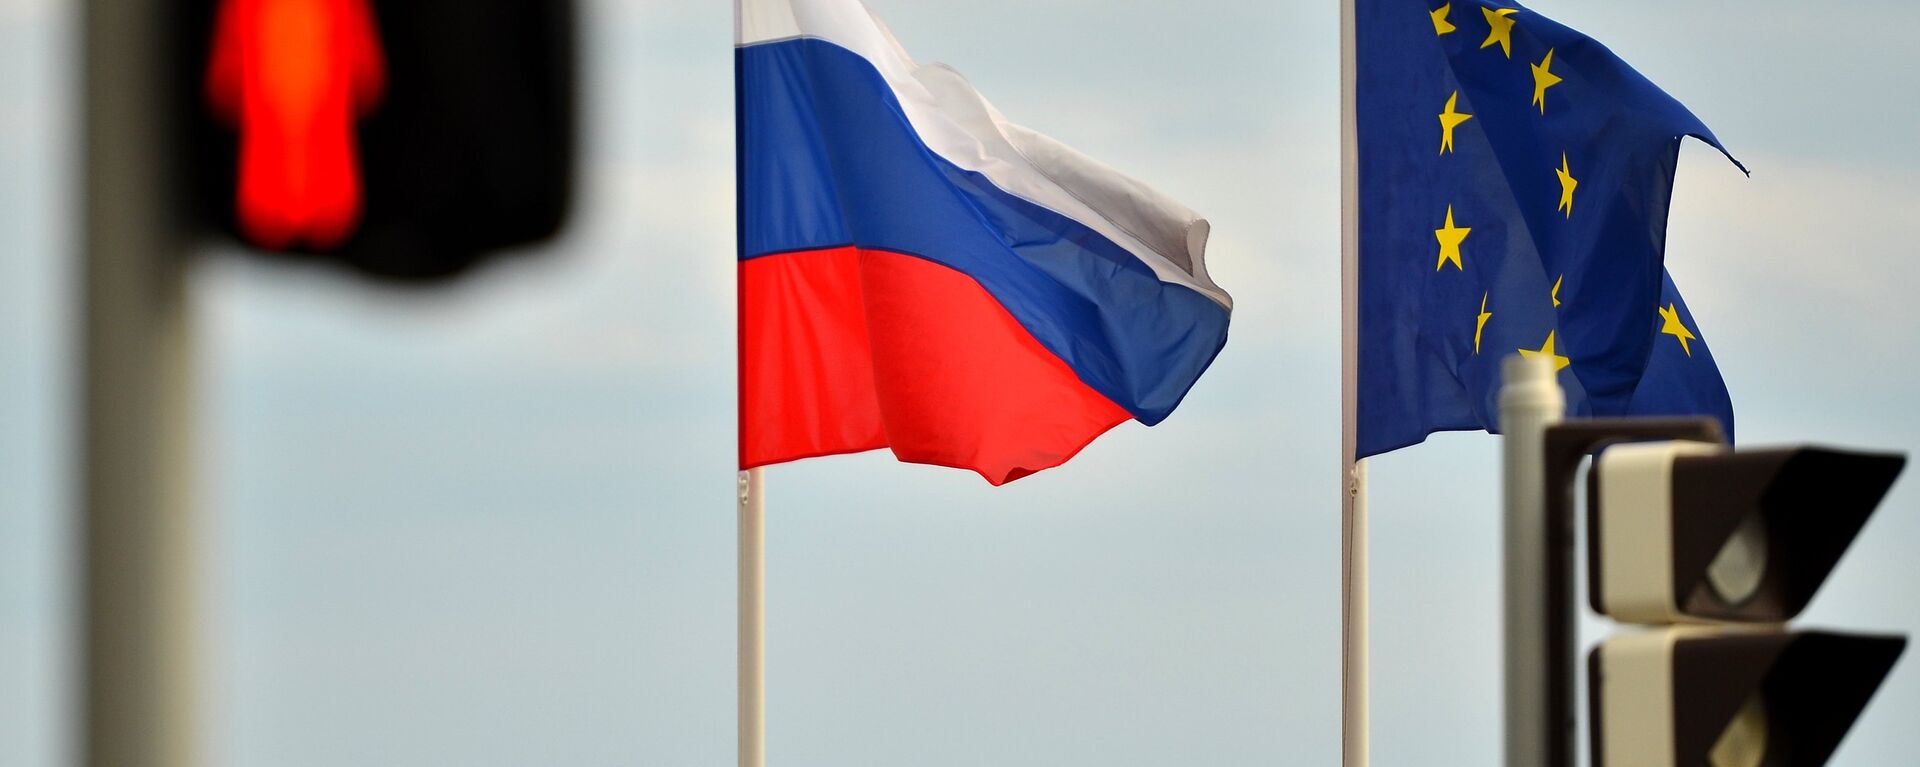 Banderas de Rusia y la UE - Sputnik Mundo, 1920, 08.07.2021